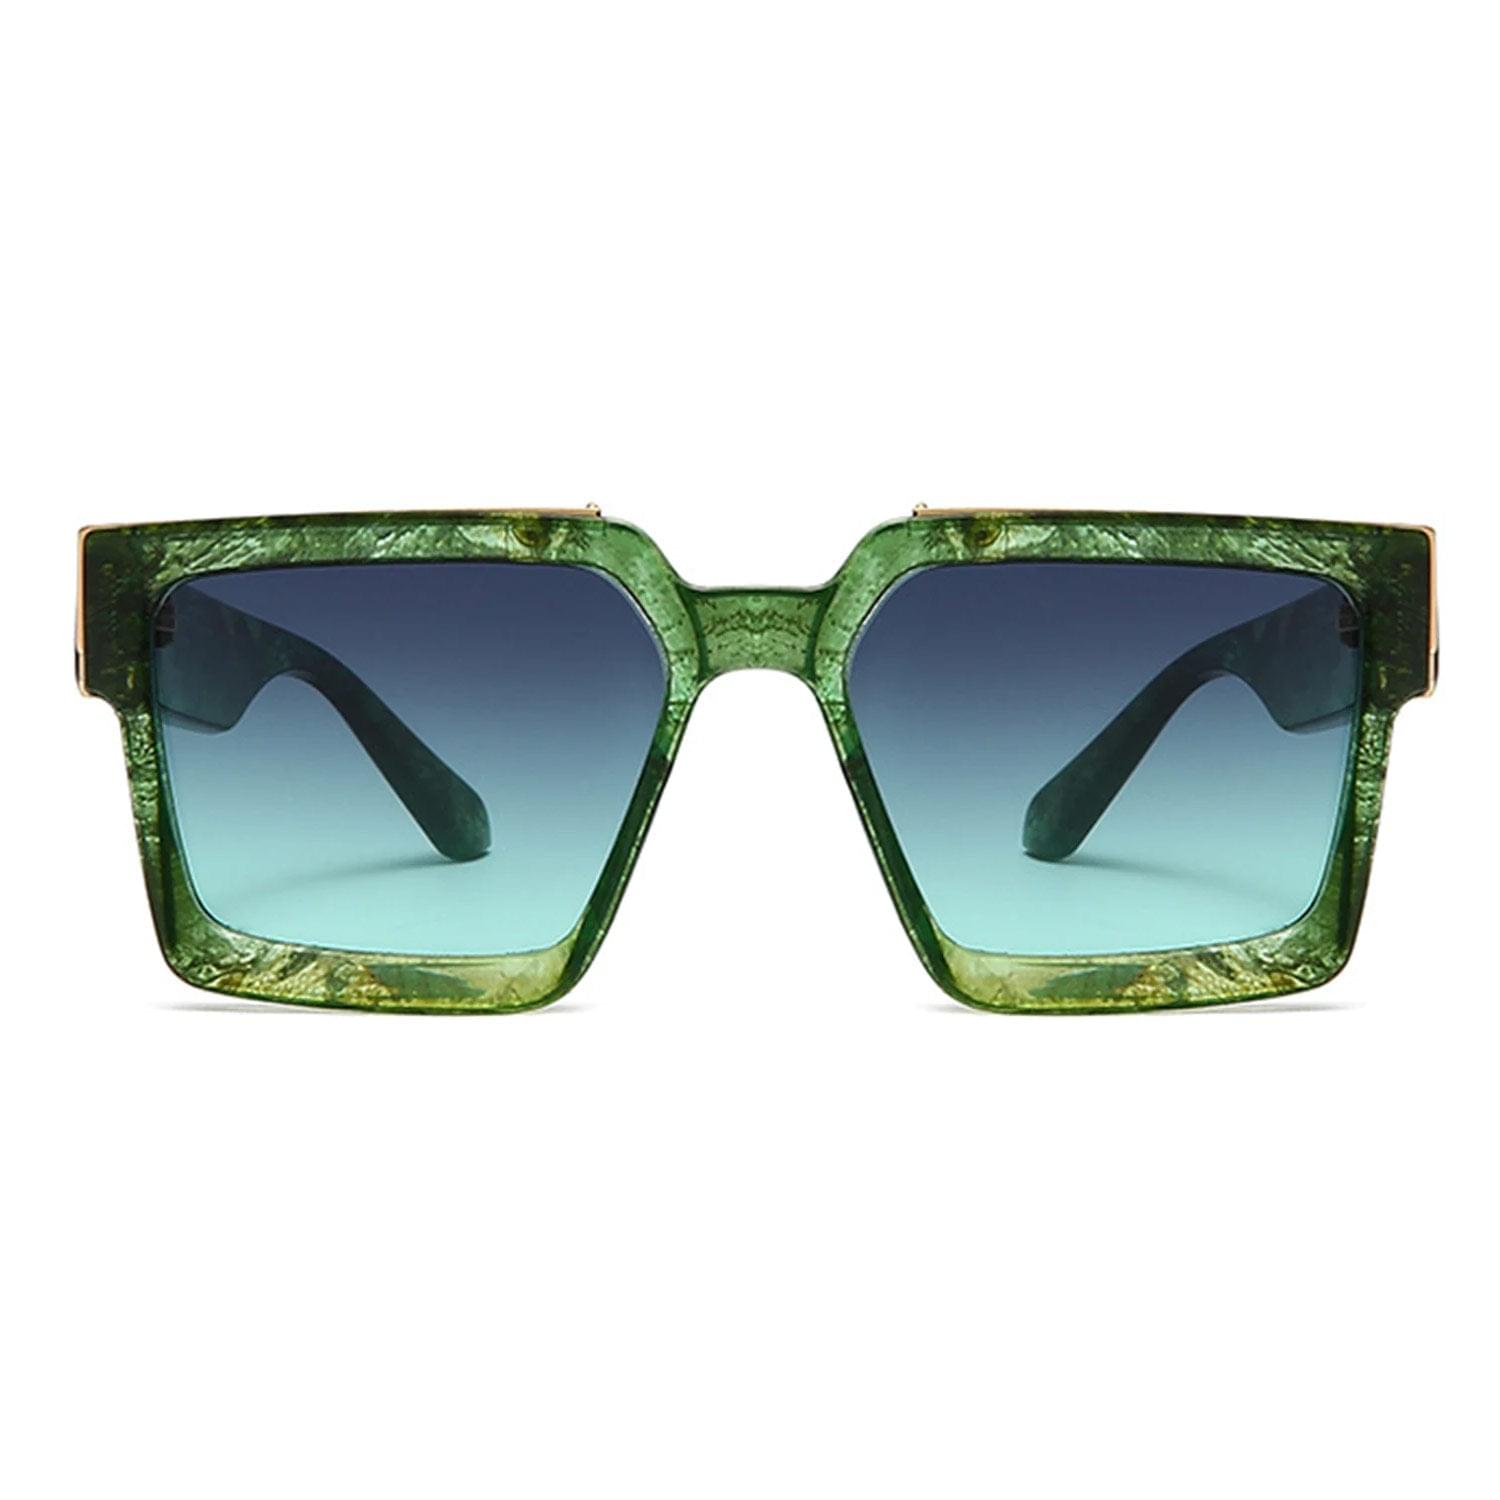 Sunglasses Louis Vuitton Louis Vuitton 1.1 Millionaires Mixed Glasses for Men and Women